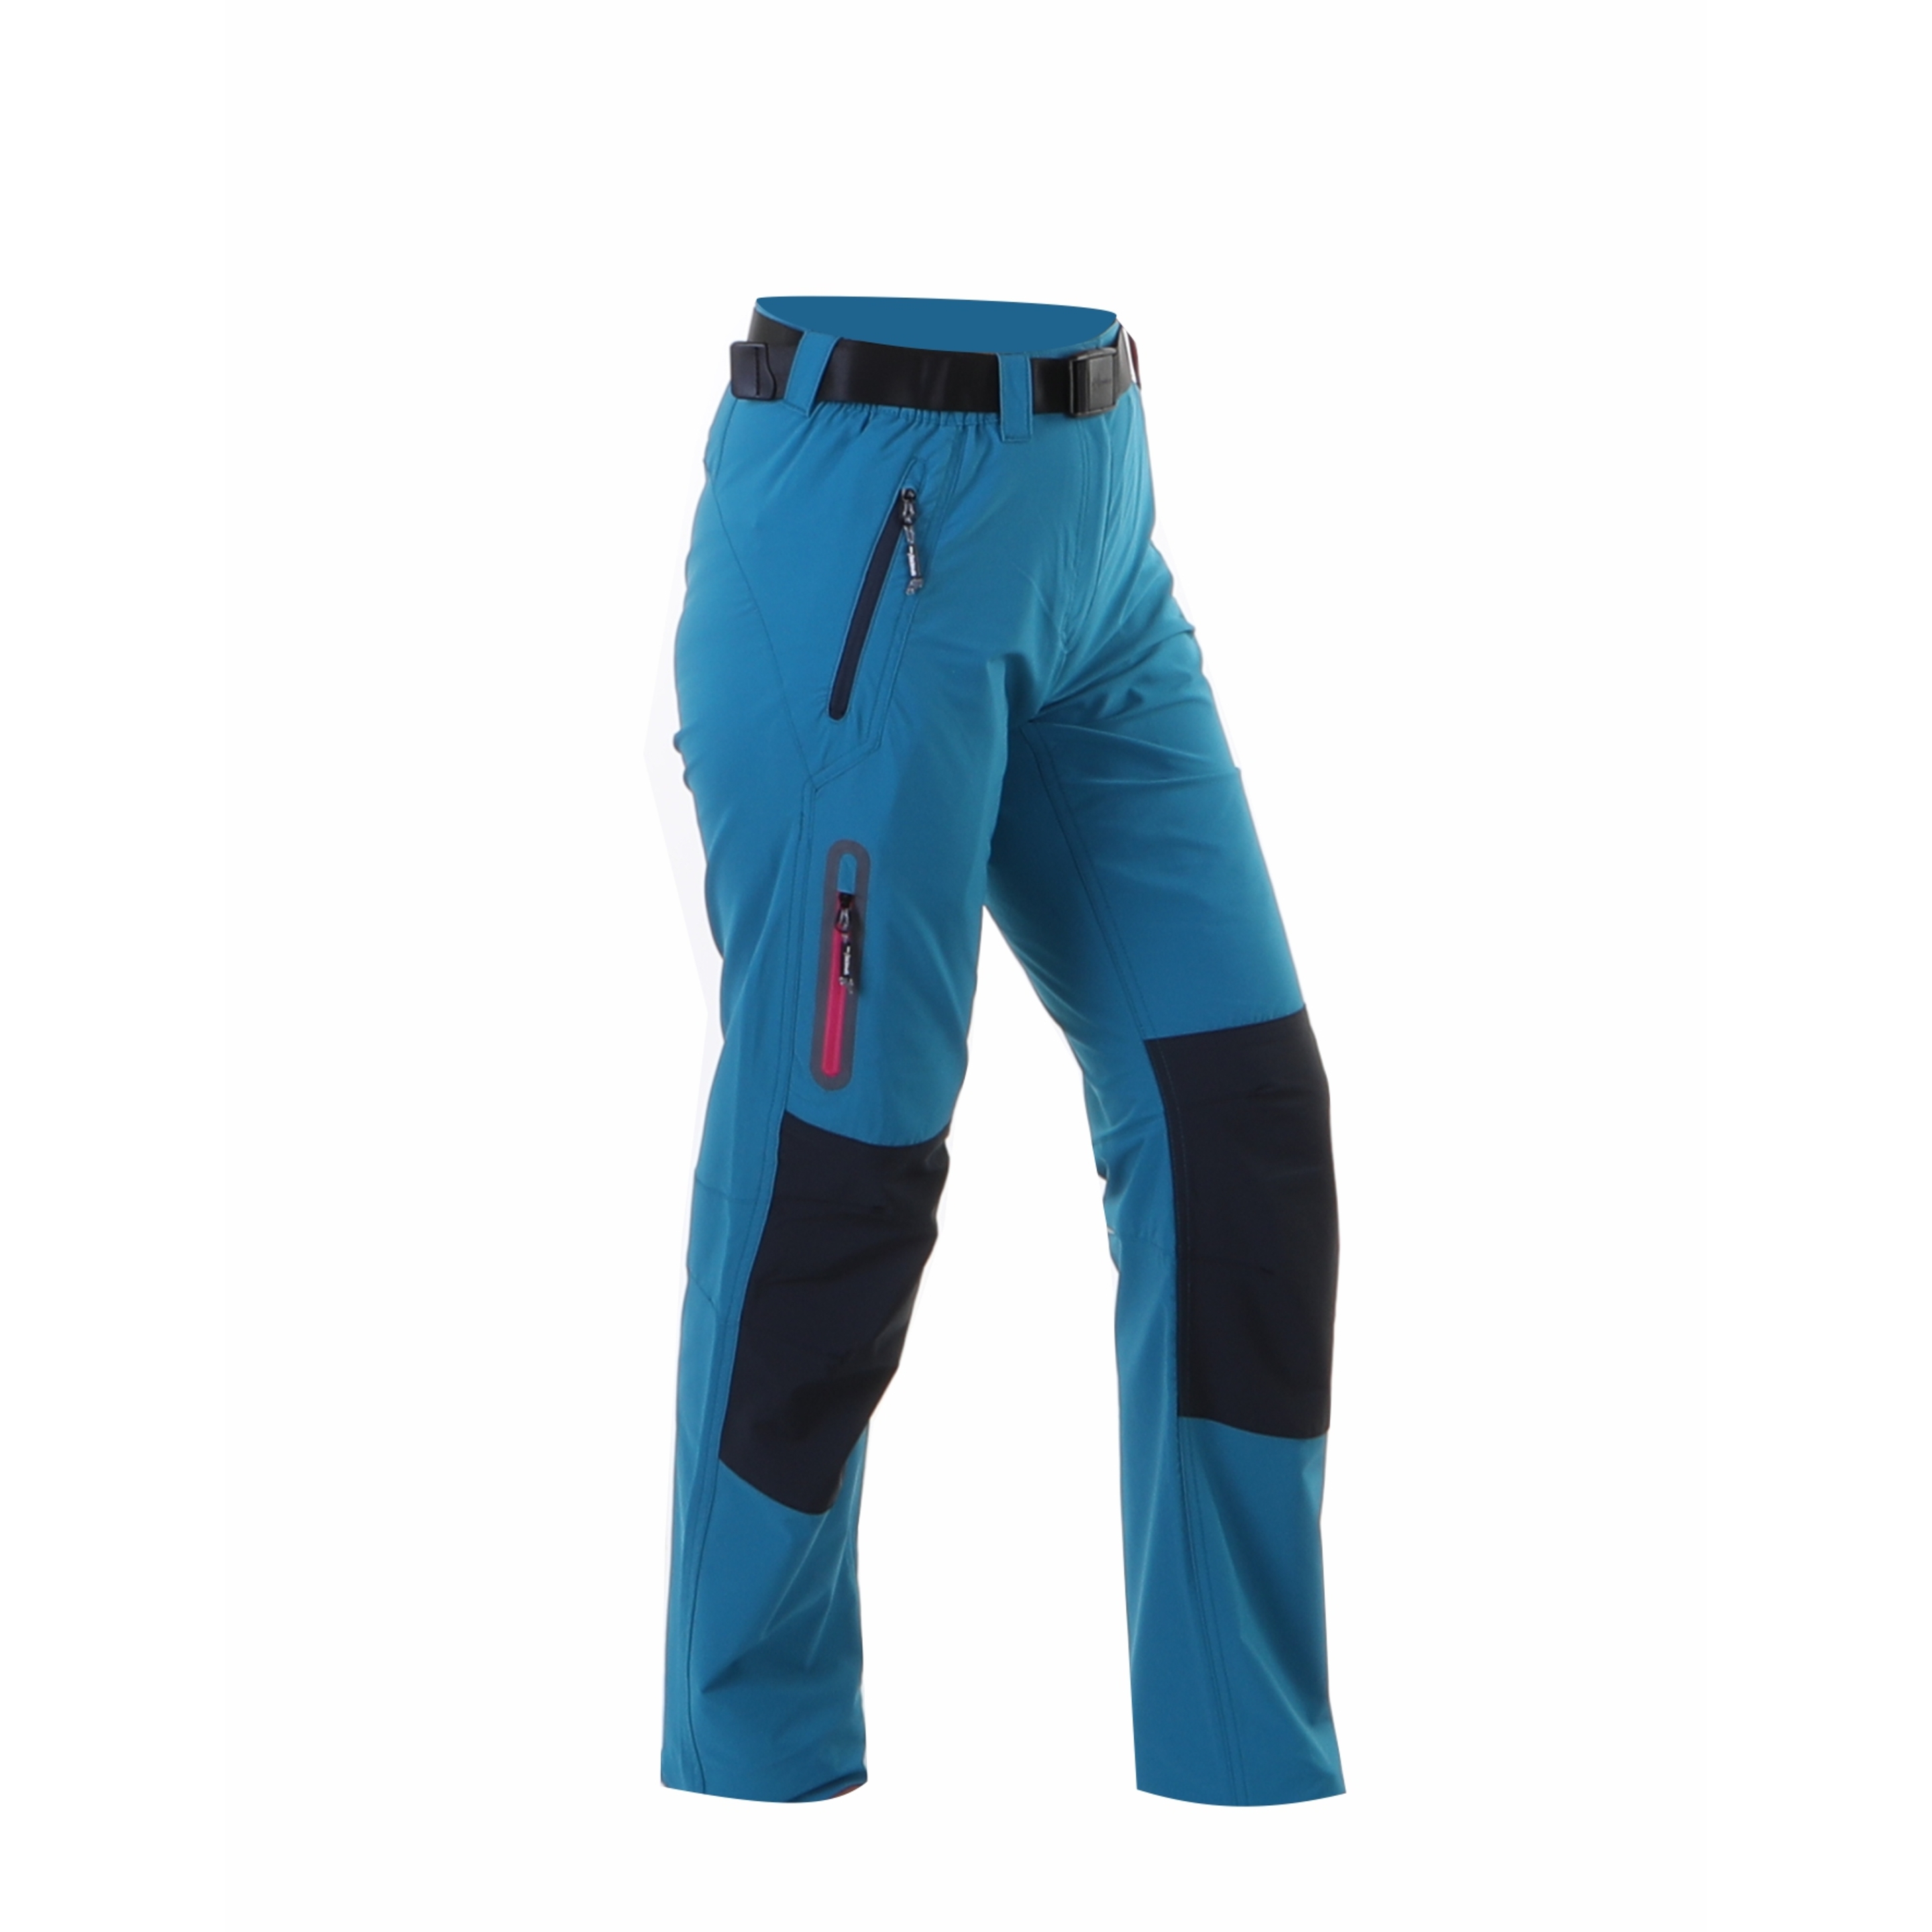 Pantalón Contraste Rodillas Trekking Sphere - azul zafiro - Outdoor Montaña  MKP